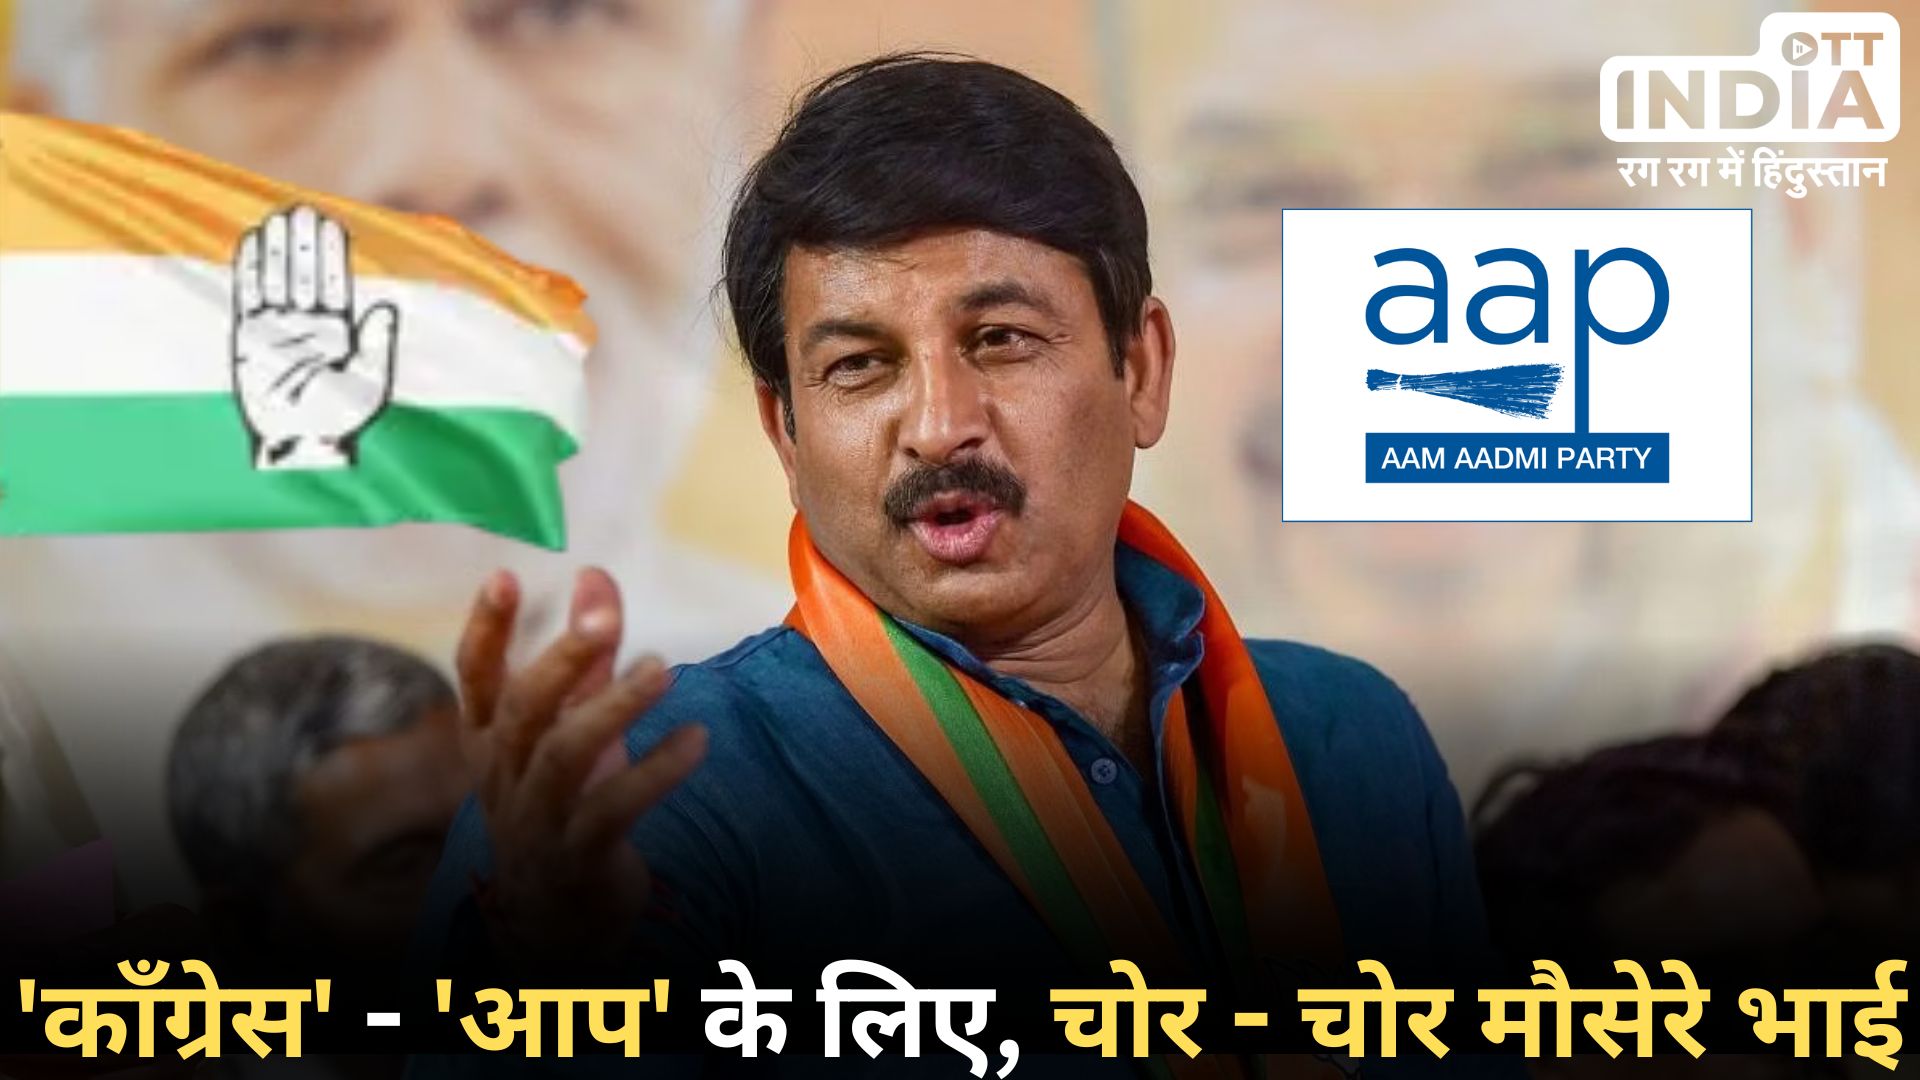 Delhi Politics: कांग्रेस और AAP के बीच सीट बंटवारे के ऐलान के बाद बीजेपी नेता का कटाक्ष, कहा- ‘चोर-चोर…’